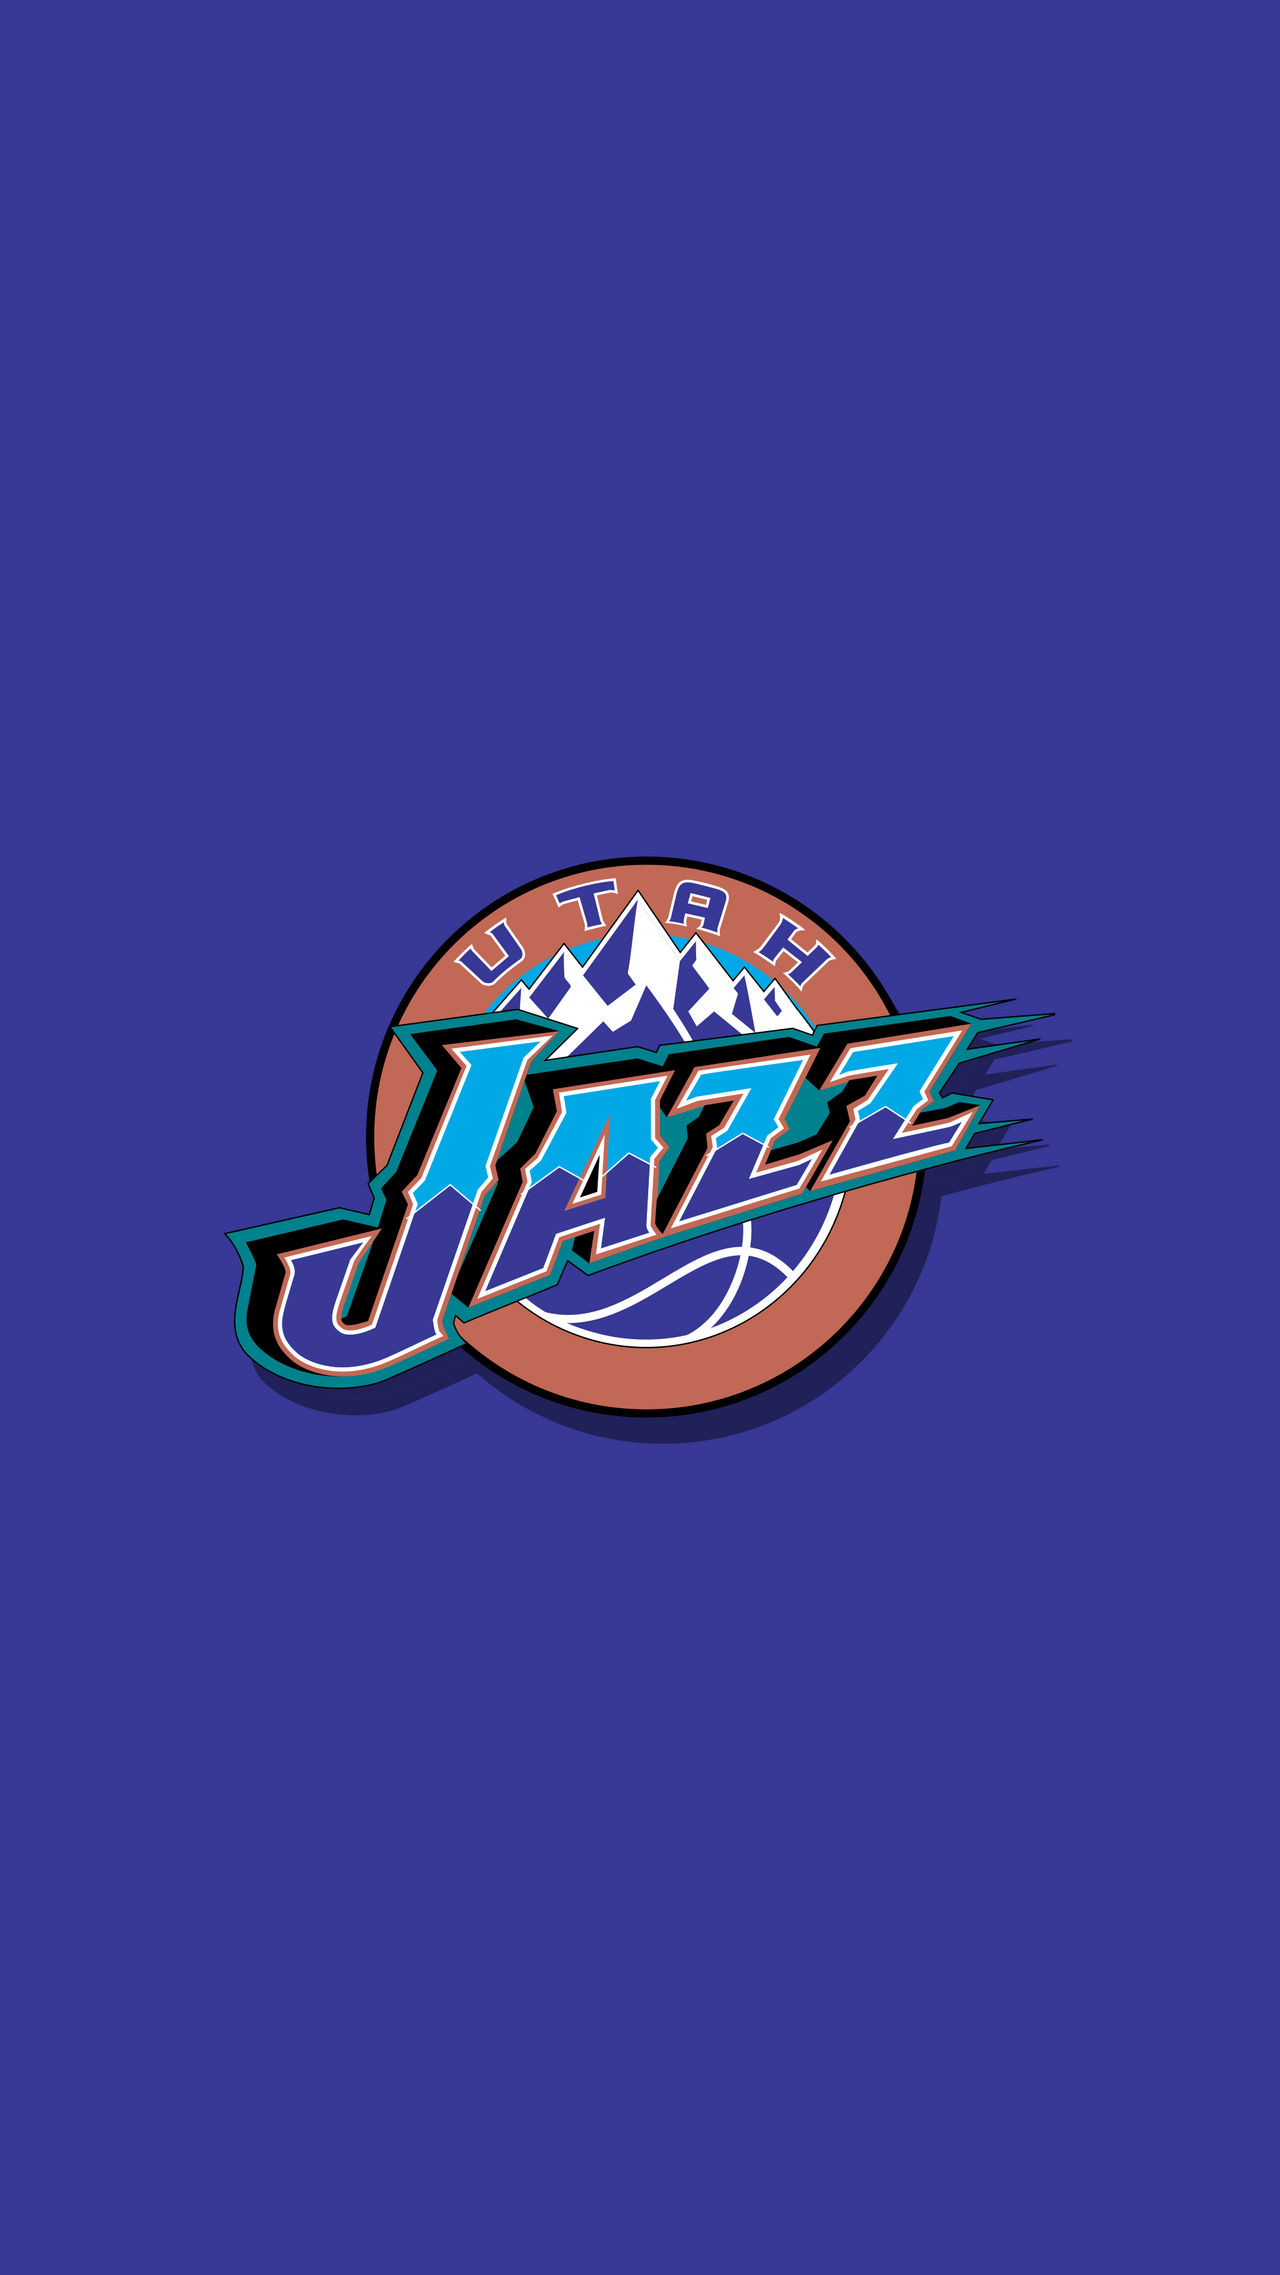 Official Utah Jazz Wallpaper, Utah Jazz